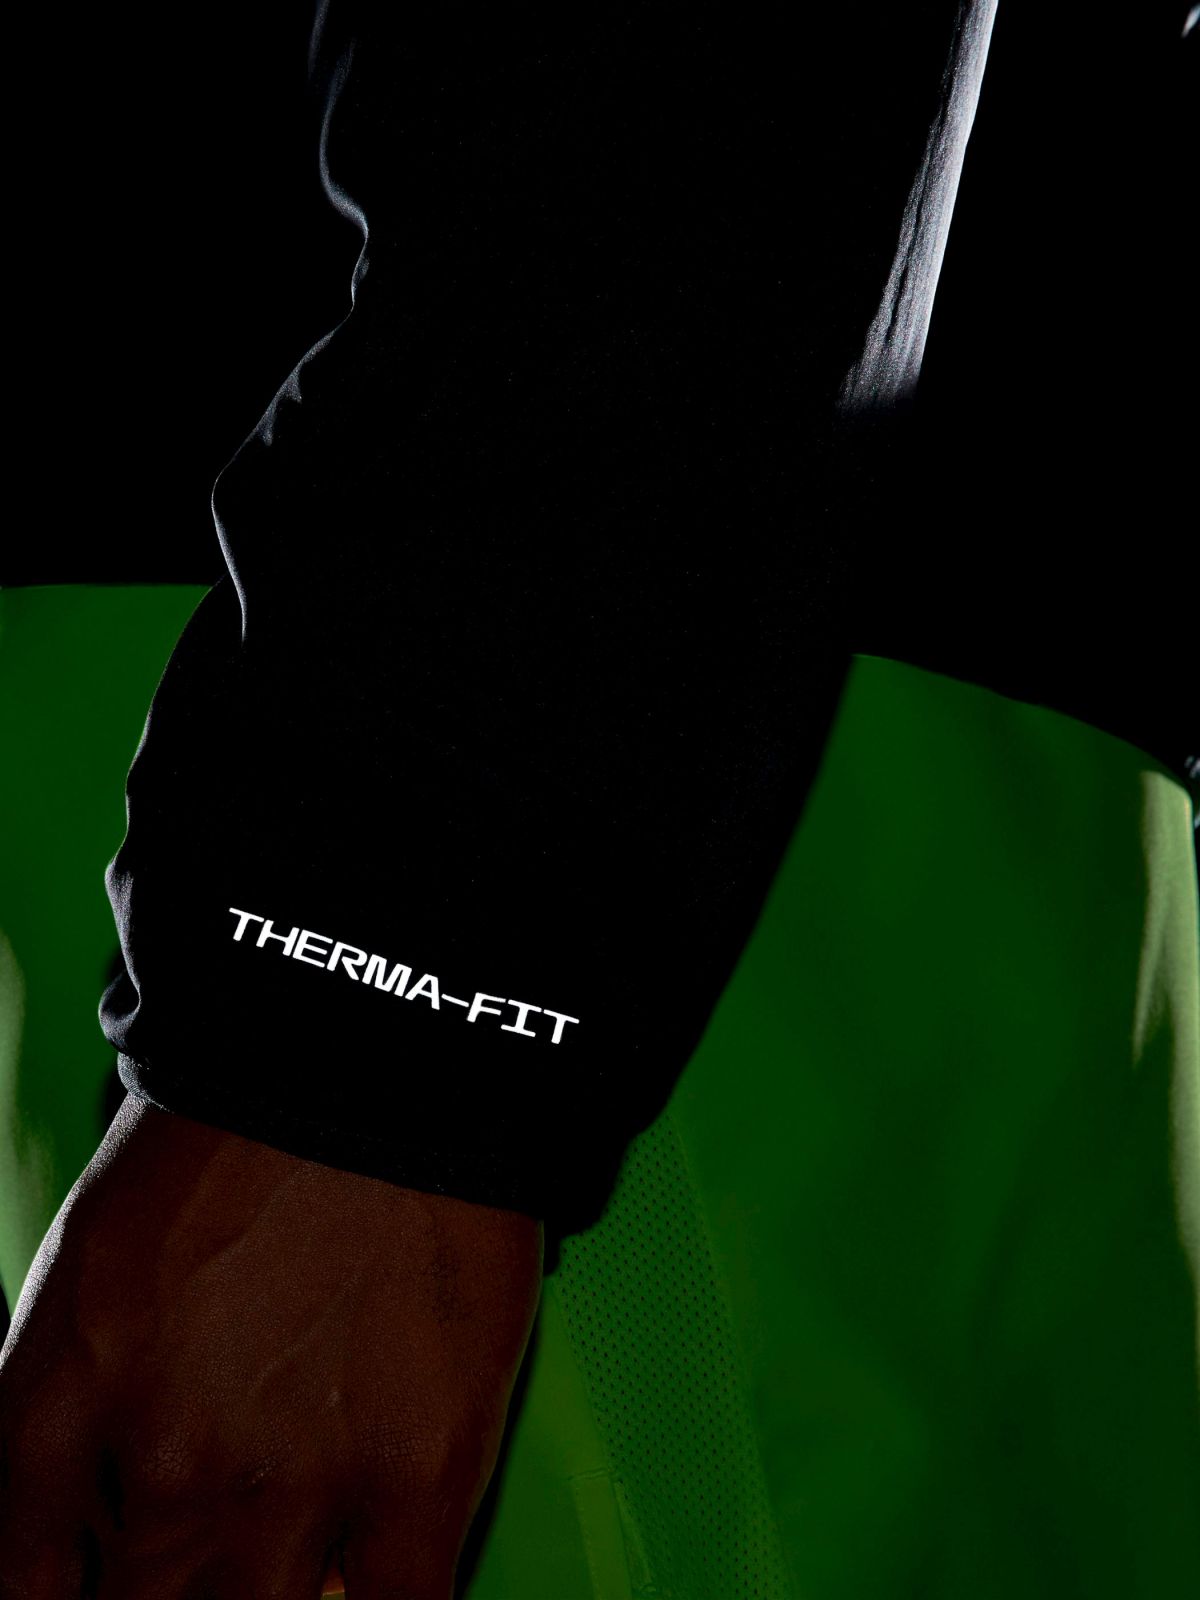  ג'קט ריצה Nike Therma-FIT Repel של NIKE